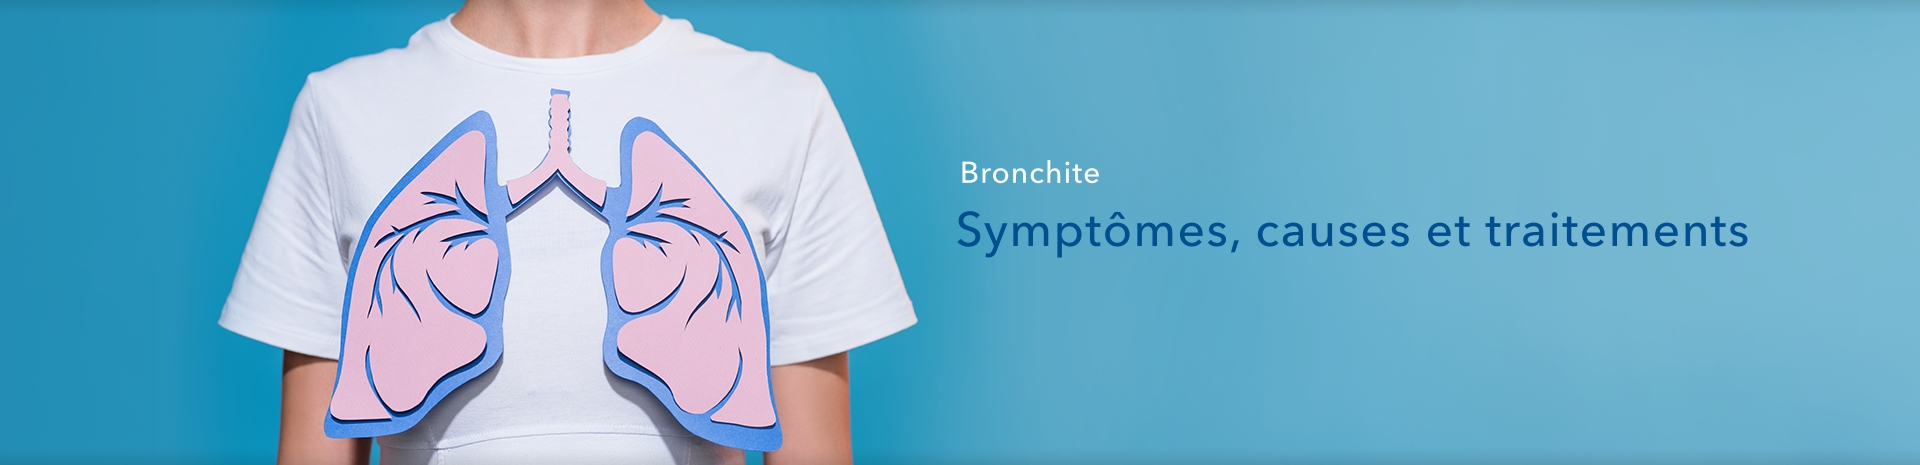 Symptômes, causes, traitement : tout savoir sur la bronchite